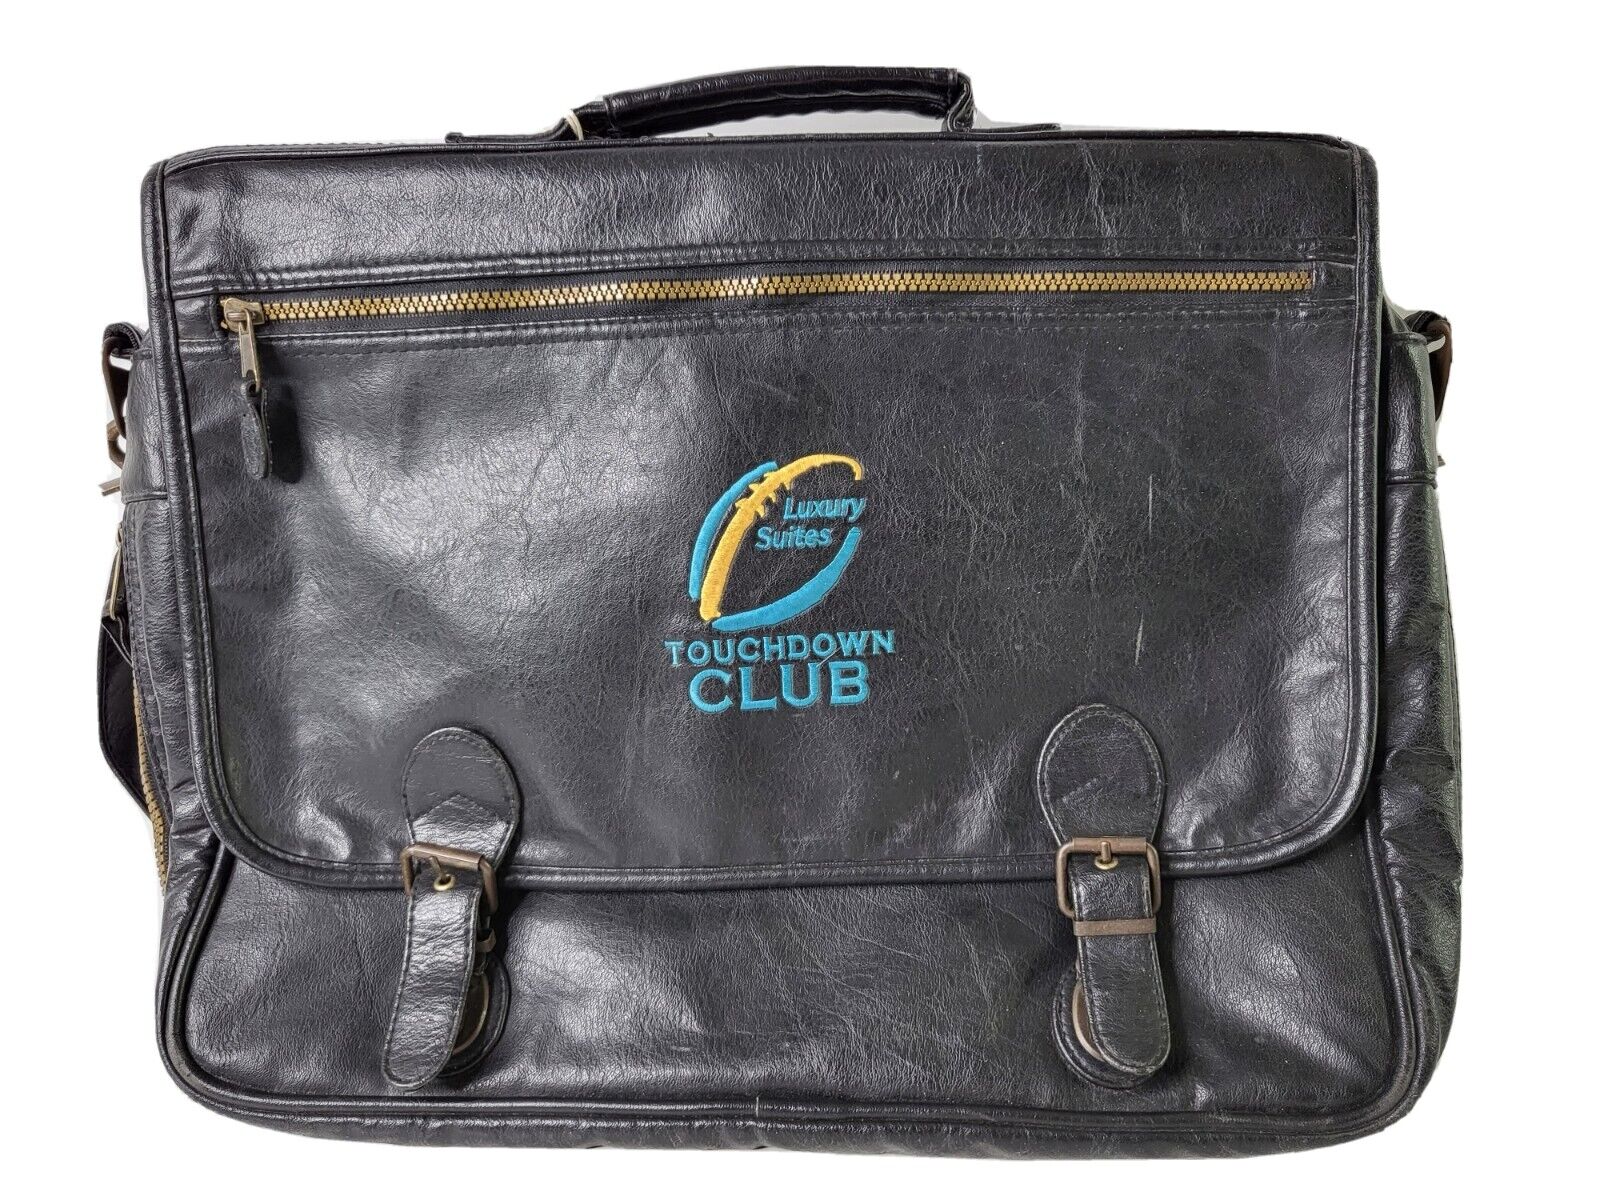 Vintage Touchdown Club Luxury Suites 100% Leather Briefcase Black Bag